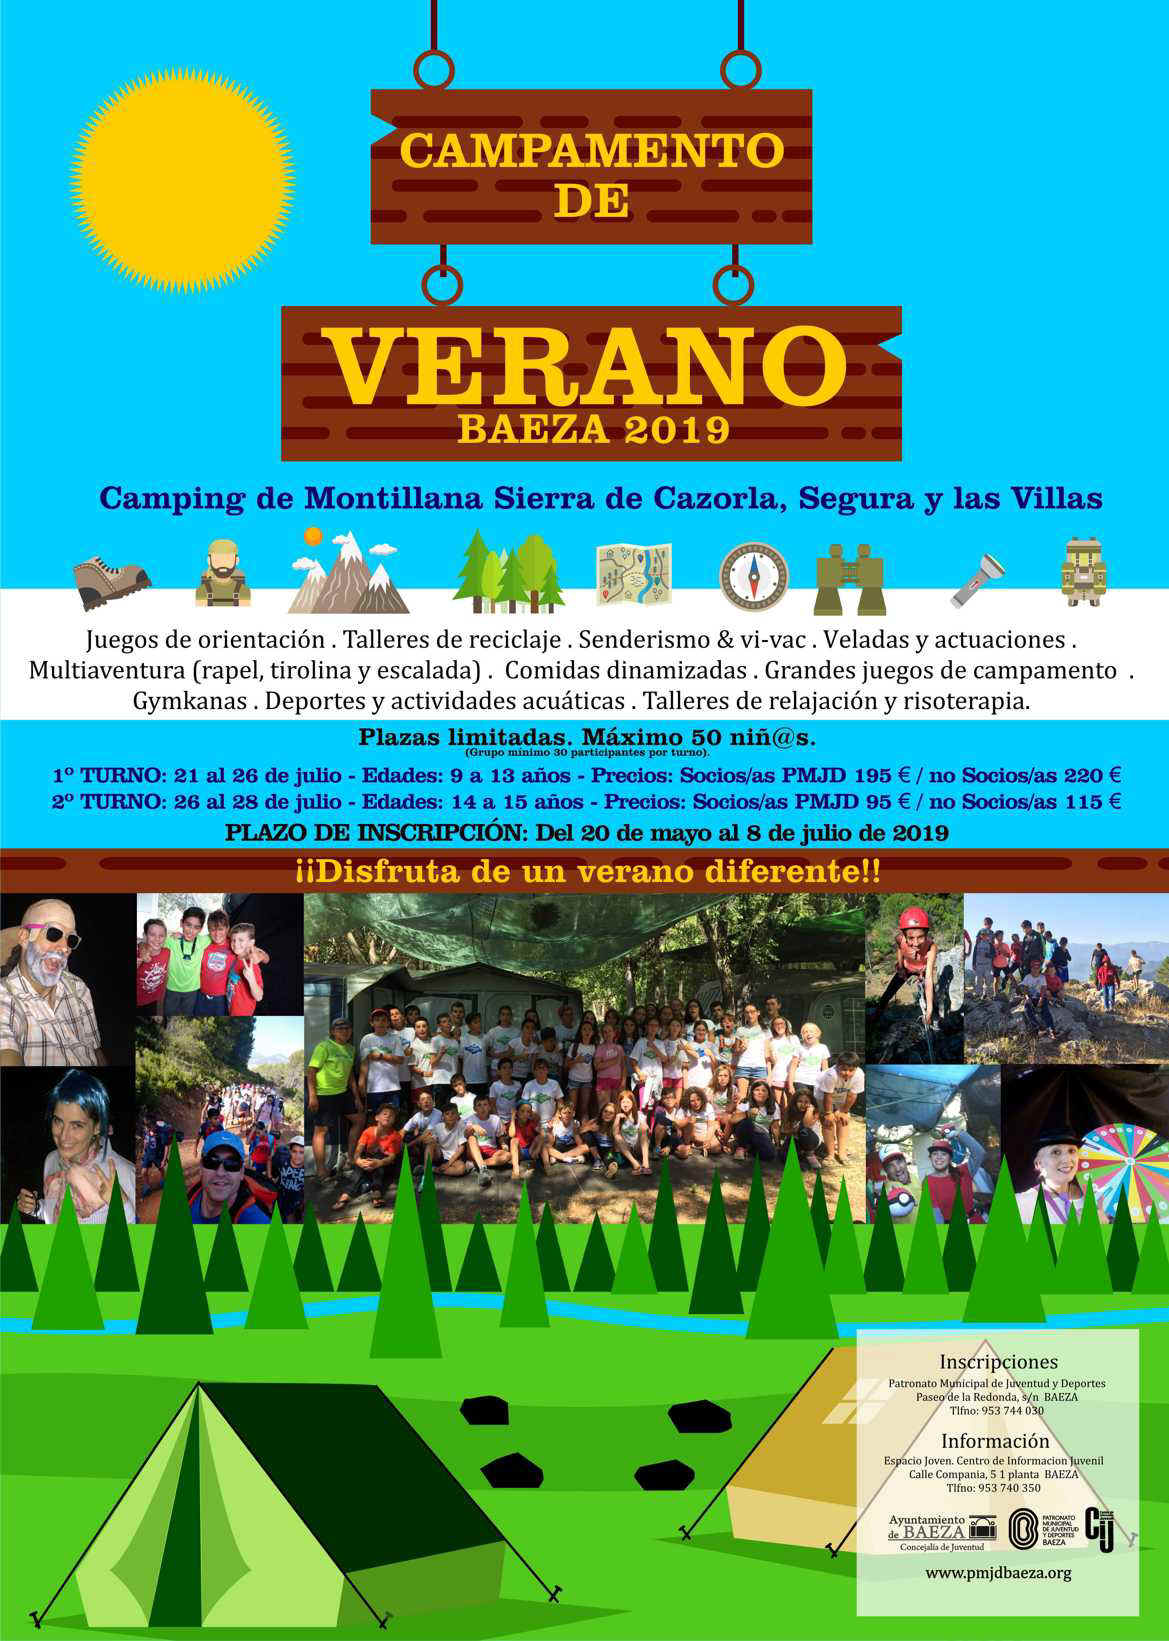 Campamento_de_Verano_2019_CARTEL.jpg (239339 bytes)